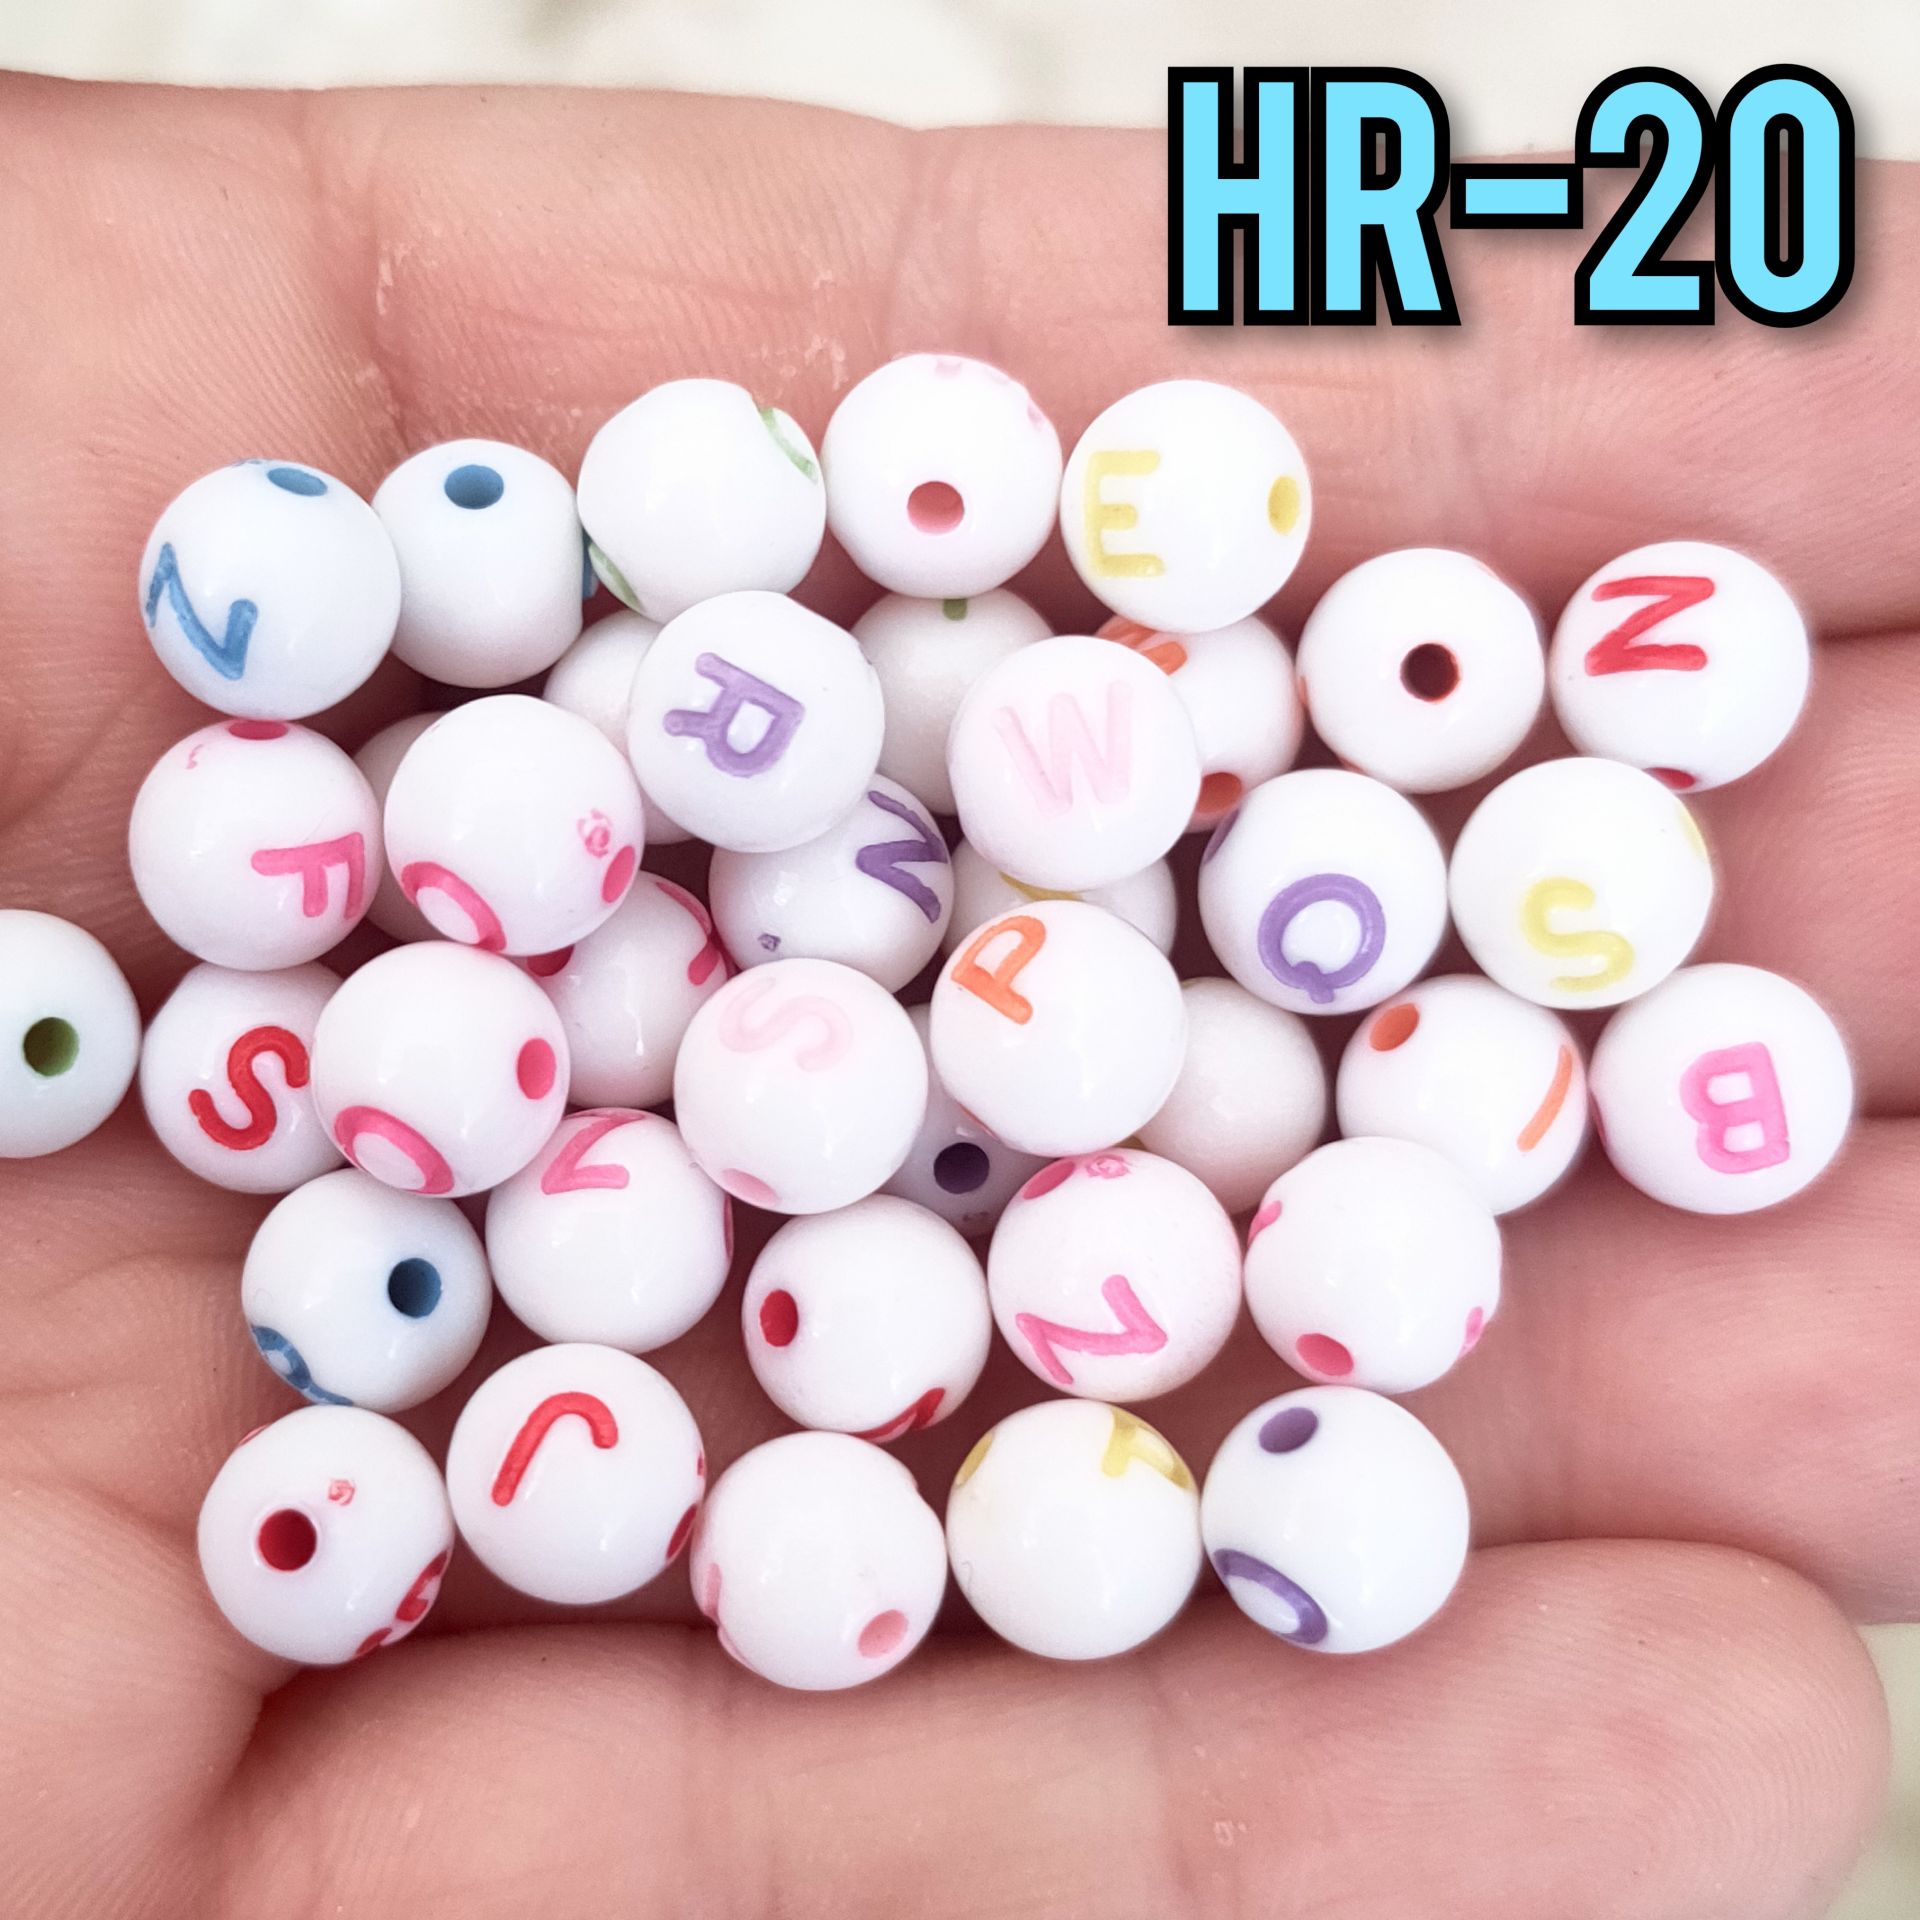 HR-20 Beyaz Renk Üzeri Karışık Renk Yazılı Plastik Yuvarlak Harf Boncuk 8 mm